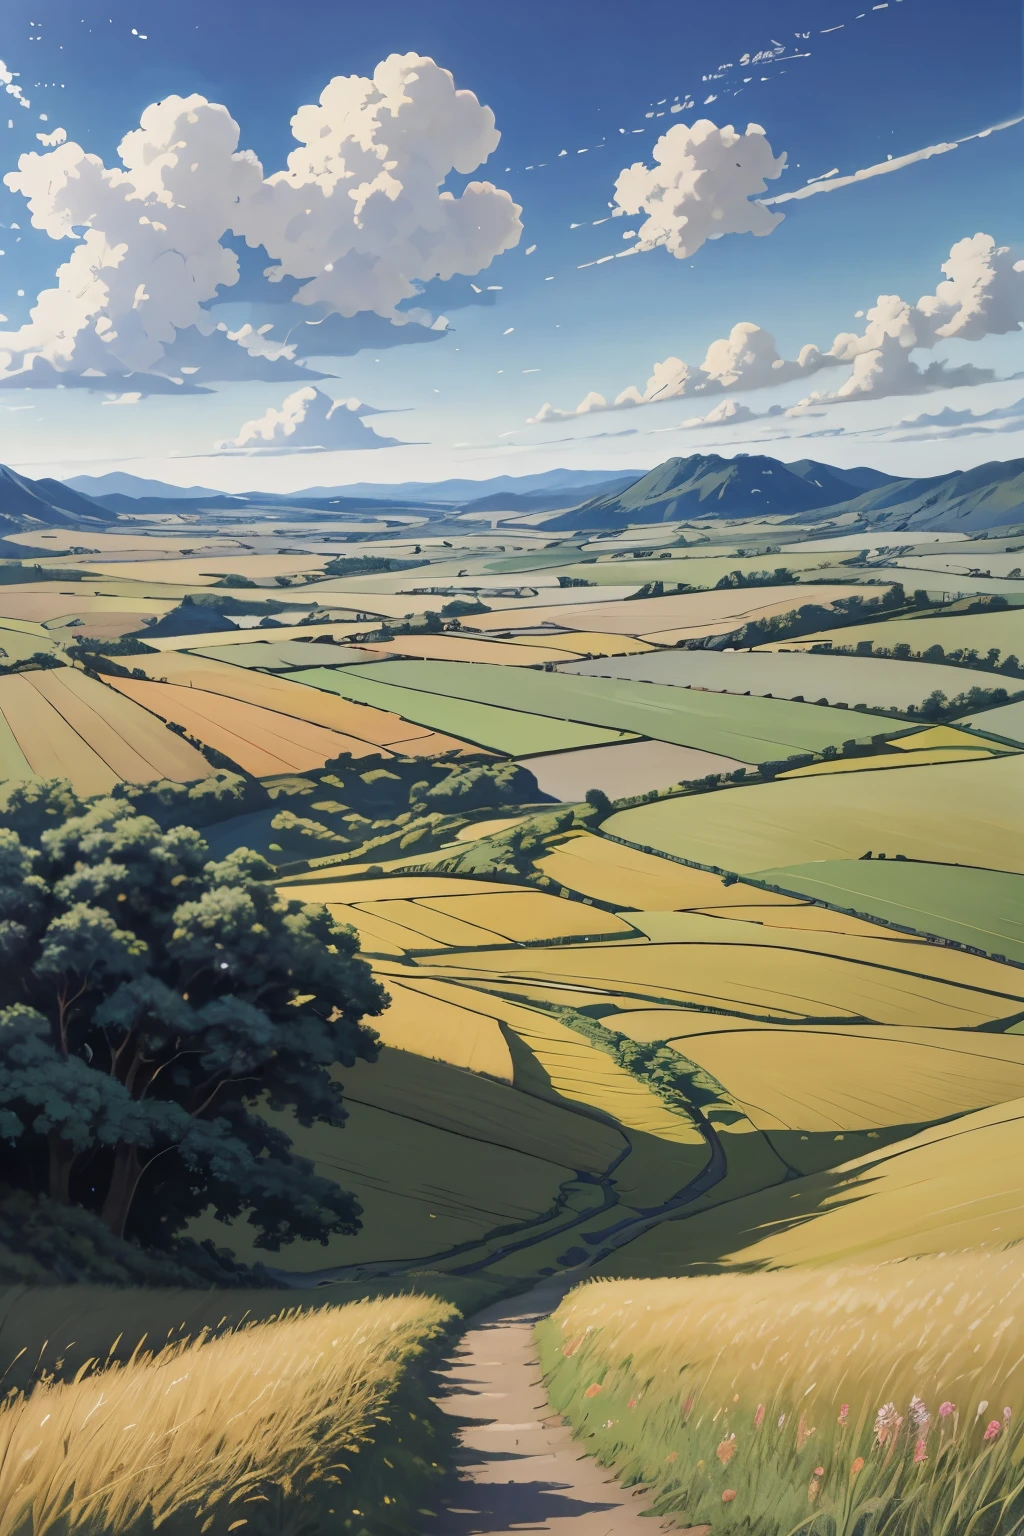 Realista, real, Hermoso e impresionante paisaje pintura al óleo Studio Ghibli Hayao Miyazaki Pétalos Pastizales Cielo azul Pastizales Camino rural,edificio, 